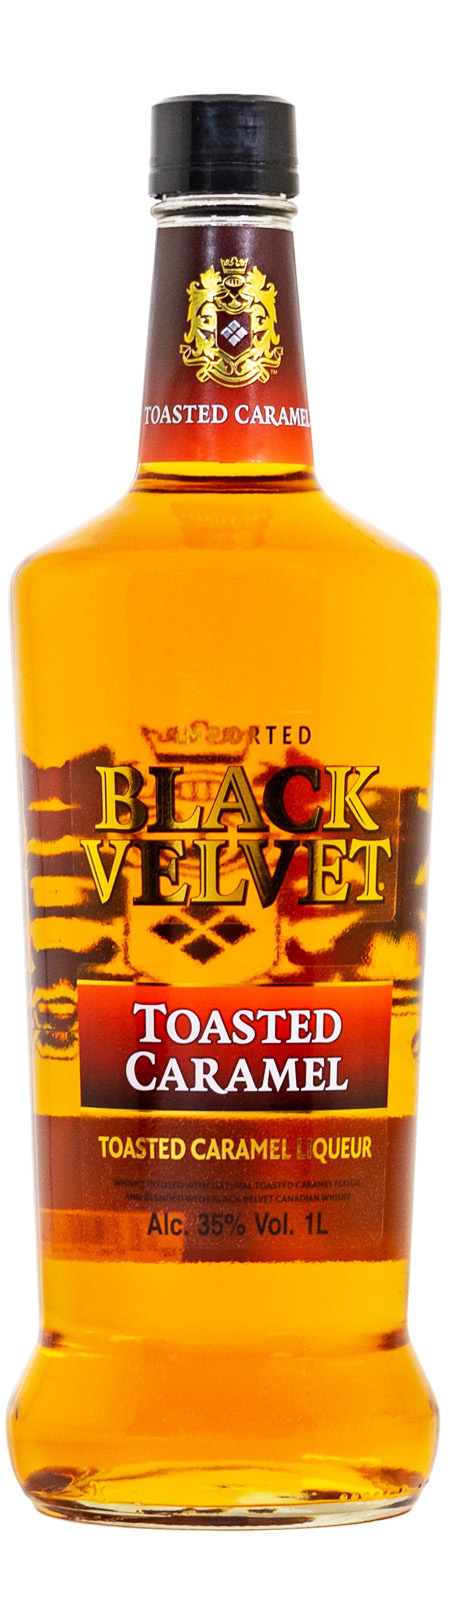 Black Velvet Toasted Caramel - 1 Liter 35% vol